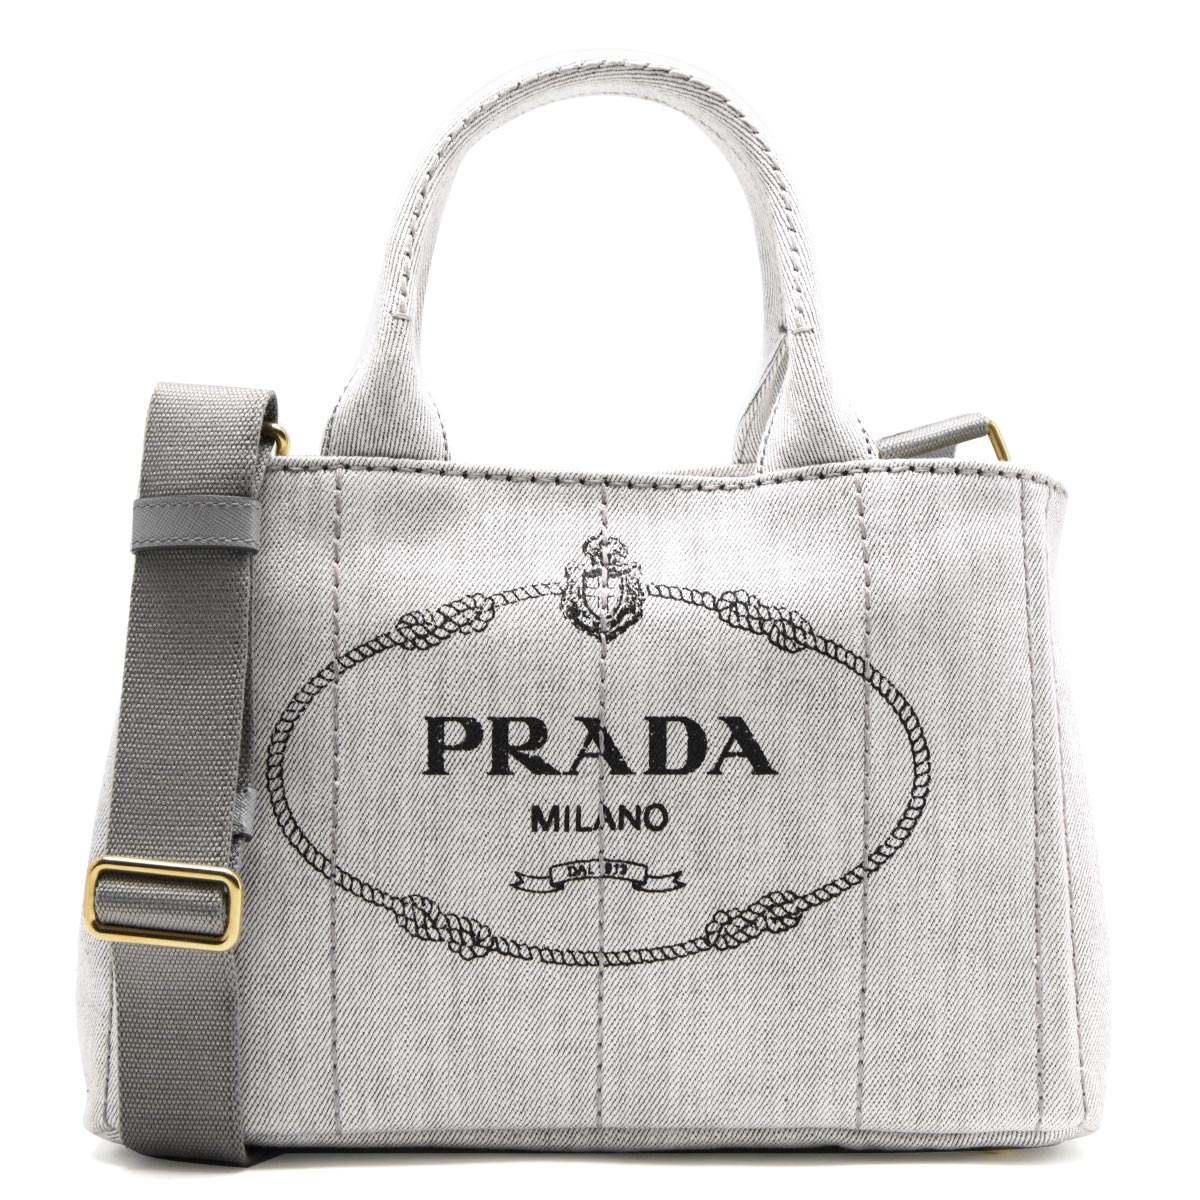 プラダ PRADA トートバッグ ハンドバッグ 鞄 カナパ デニム キャンバス